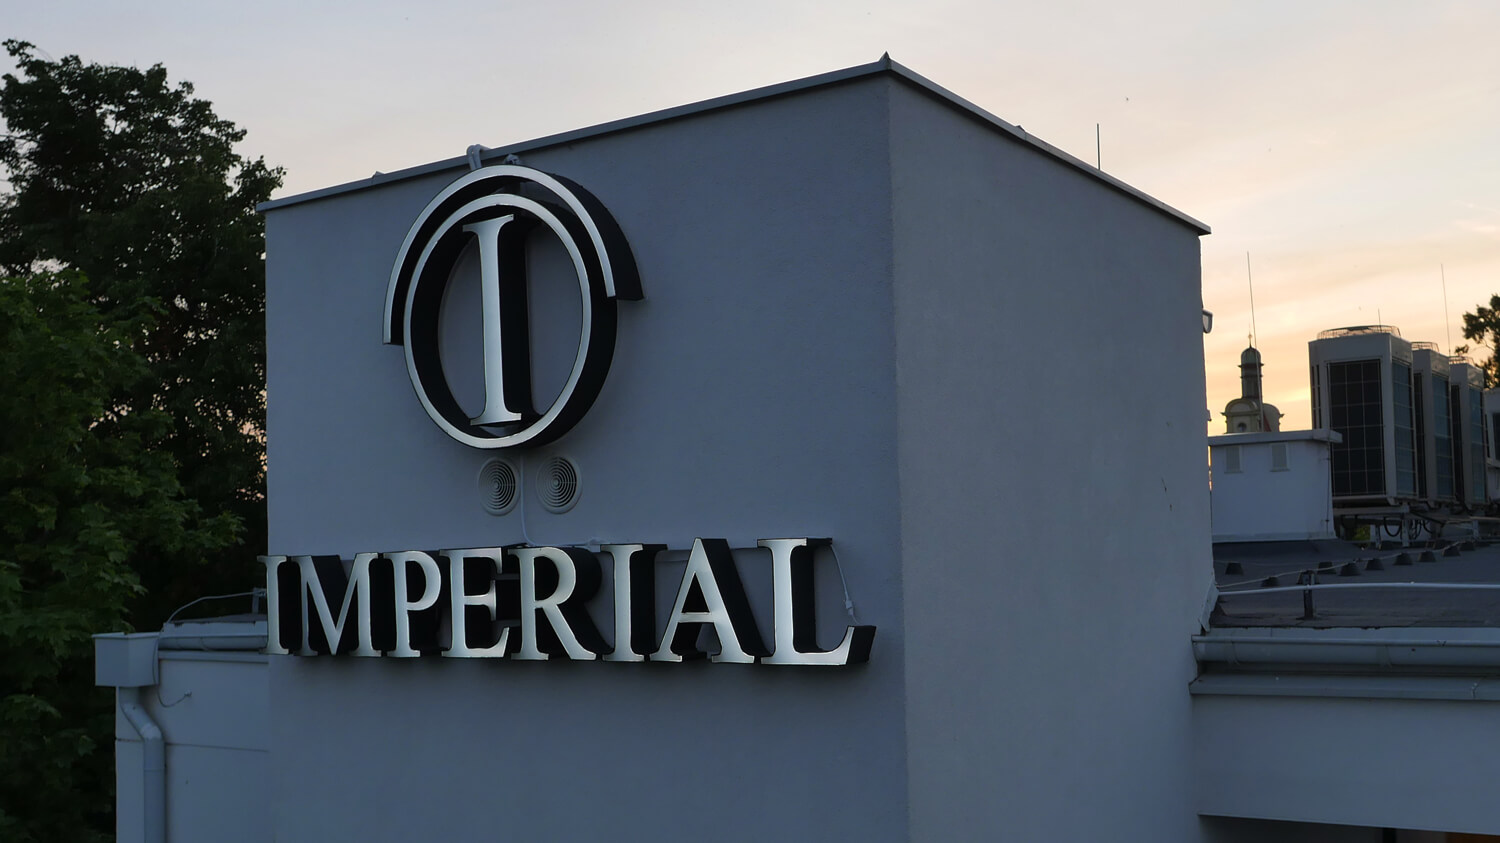 Imperial - Hotel Imperial - letras espaciales iluminadas colocadas en la pared